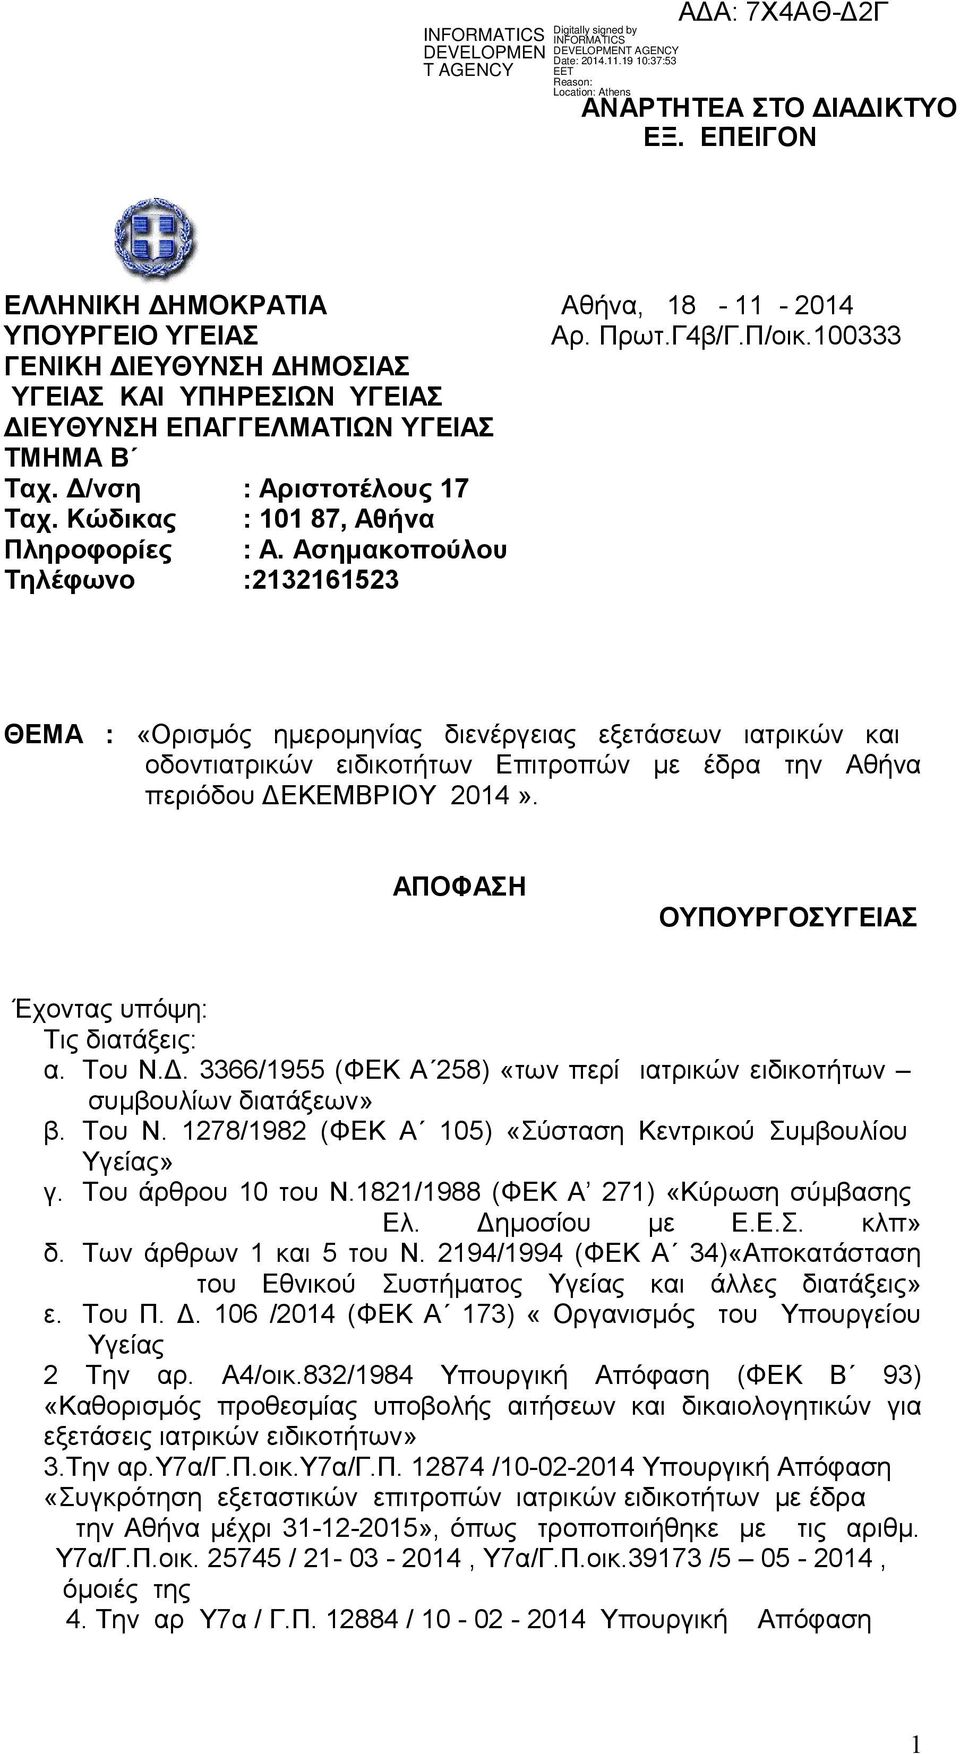 Ασημακοπούλου Τηλέφωνο :2132161523 ΘΕΜΑ : «Ορισμός ημερομηνίας διενέργειας εξετάσεων ιατρικών και οδοντιατρικών ειδικοτήτων Επιτροπών με έδρα την Αθήνα περιόδου ΔΕΚΕΜΒΡΙΟΥ 2014».